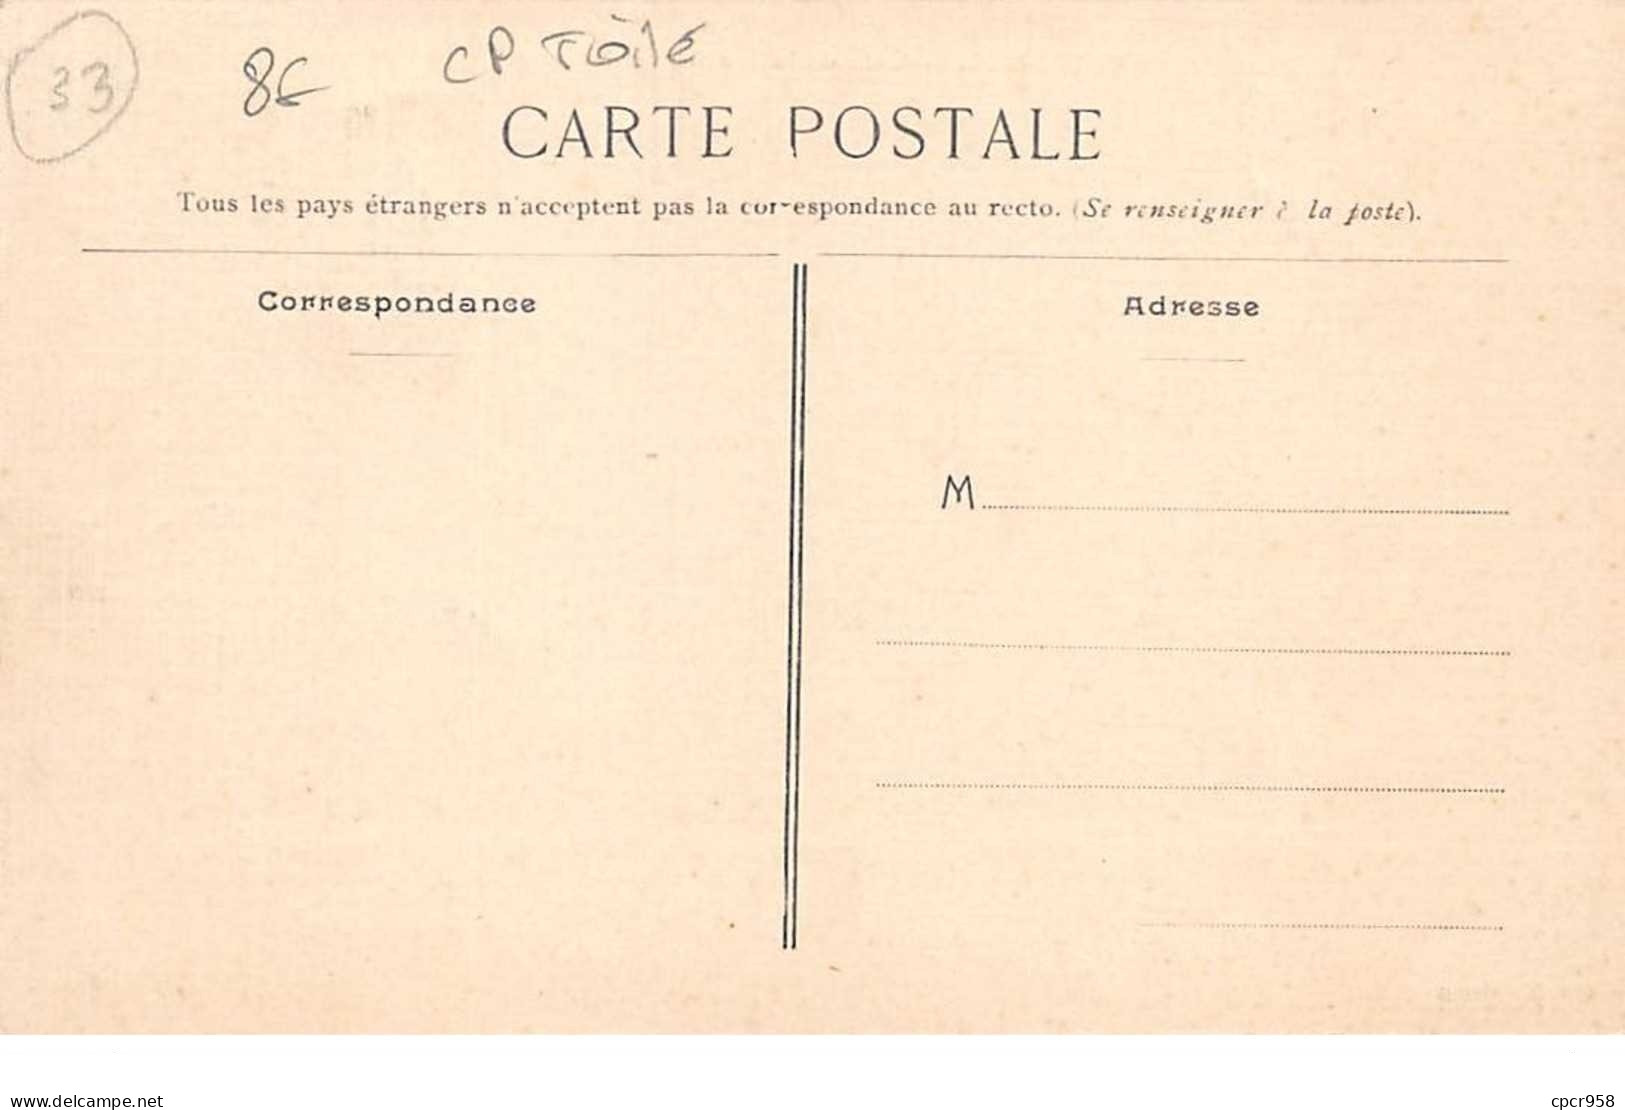 33 . N° 101145 .pauillac .cafe De La Marine Et Du Sport .carte Postale Toile   . - Pauillac